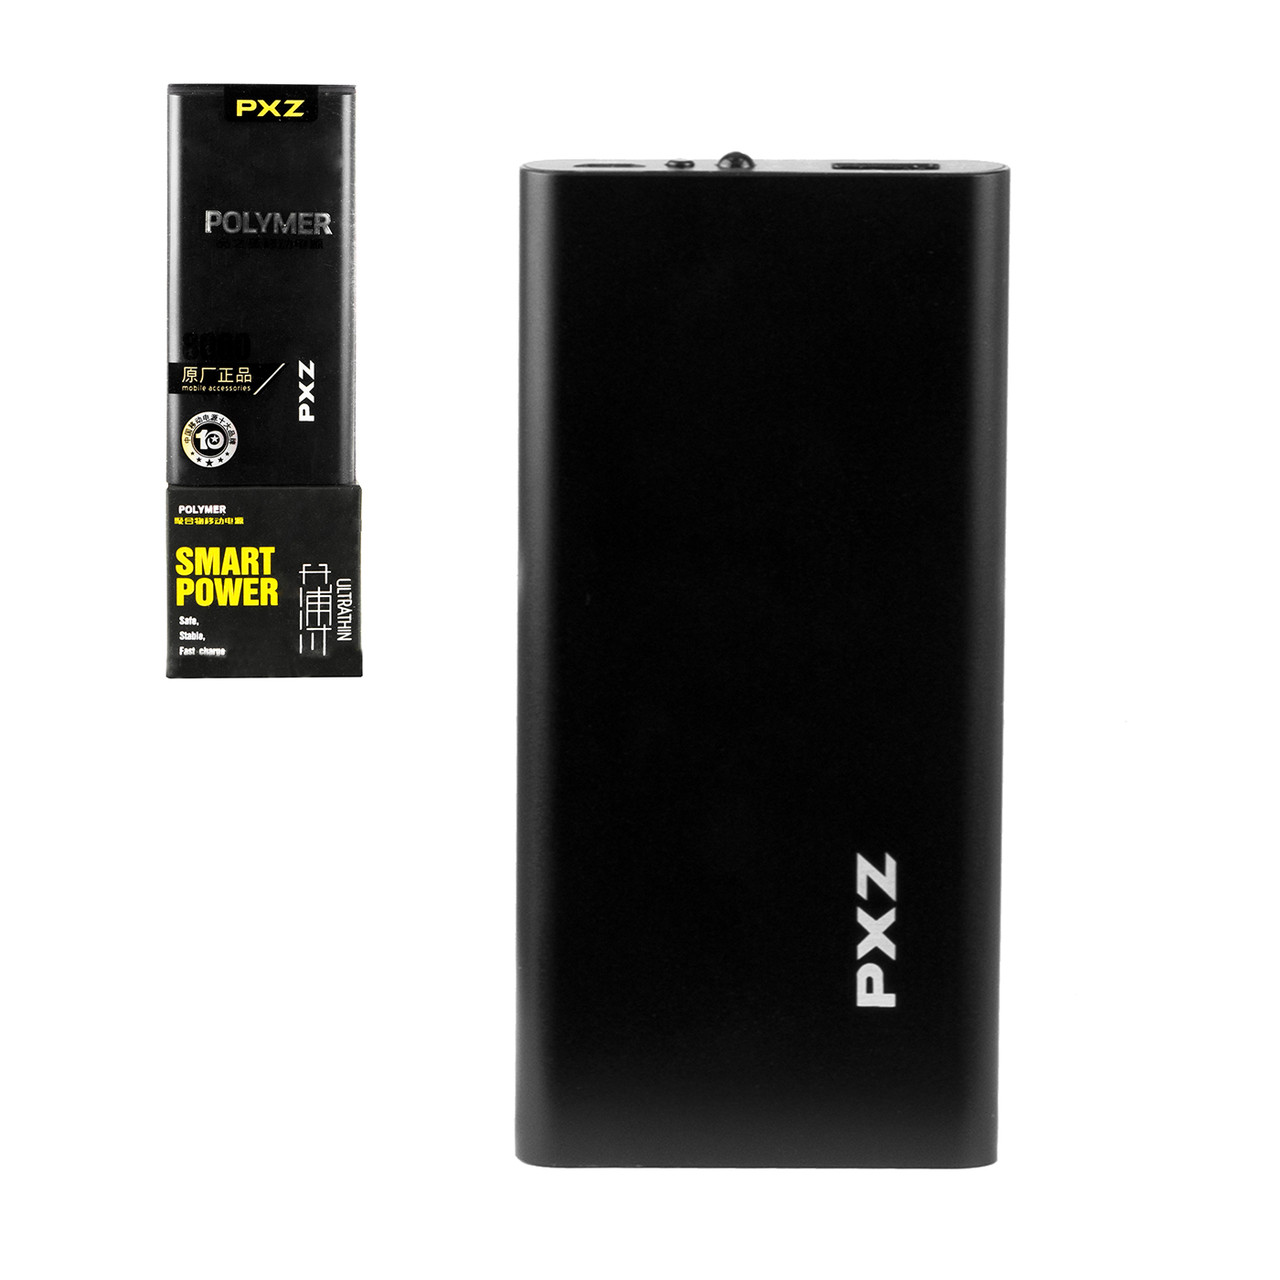 Power bank PXZ C128 8000 mAh 1XUSB, Black